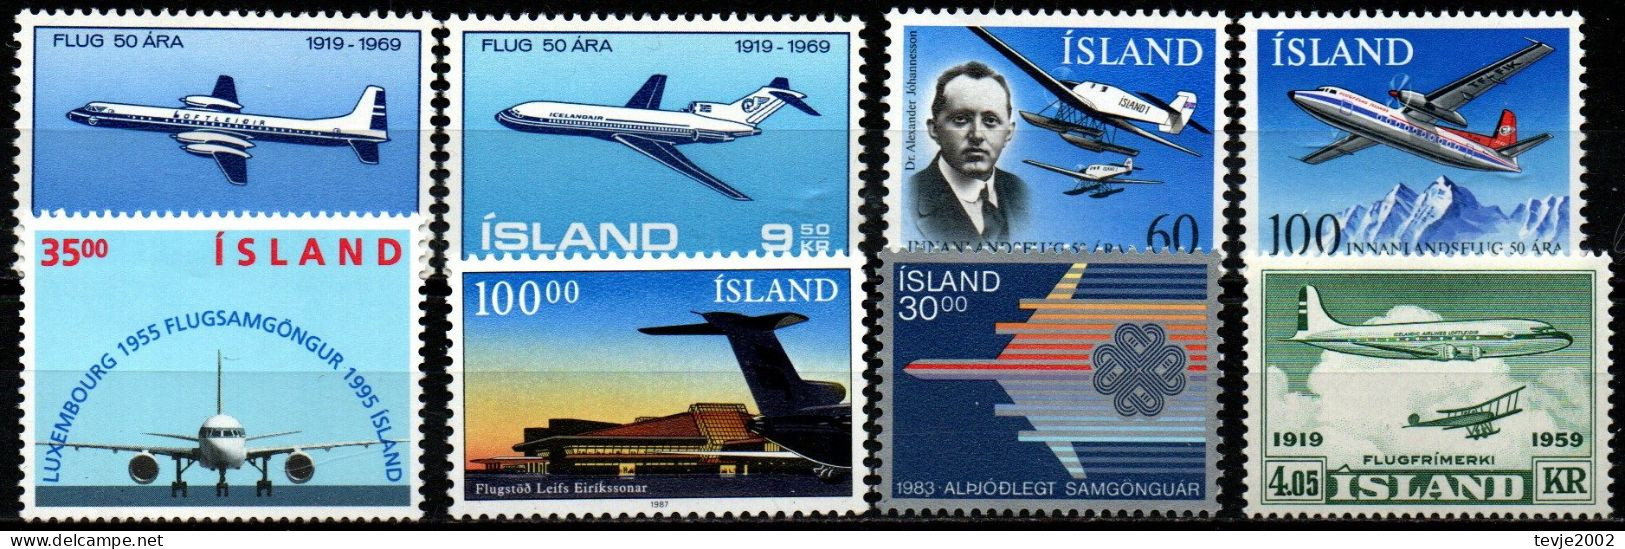 Island - Lot Aus 1959 - 1995 - Postfrisch MNH - Flugzeuge Airplanes - Airplanes